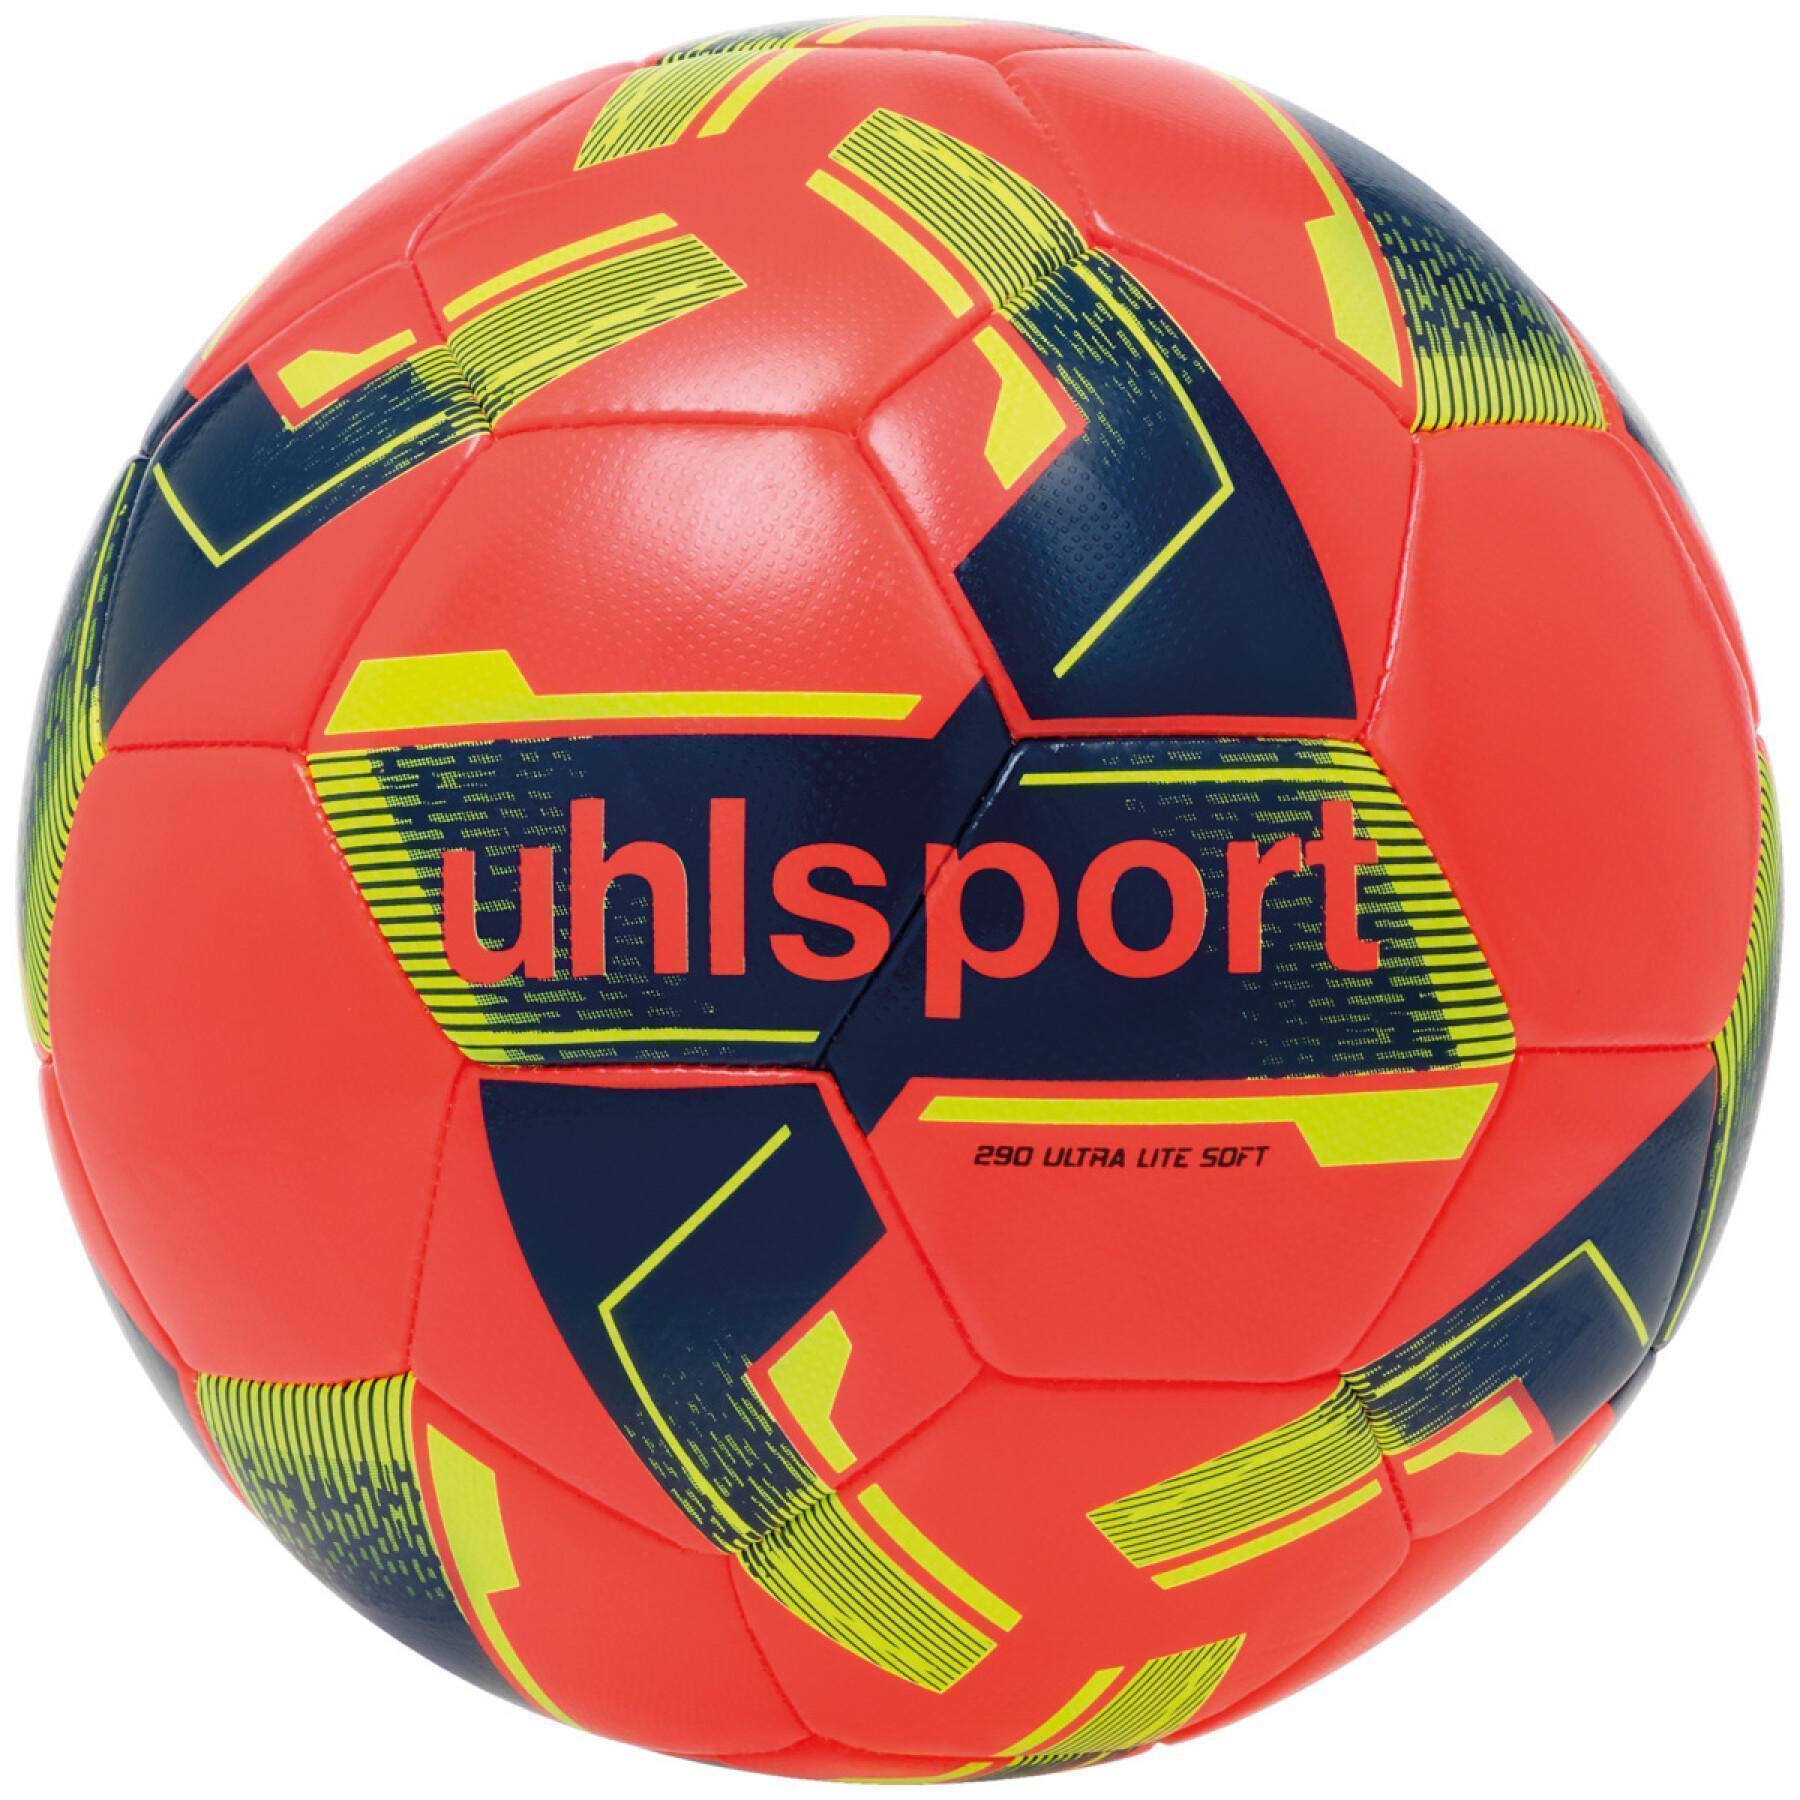 Football children Uhlsport Ultra Lite Soft 290